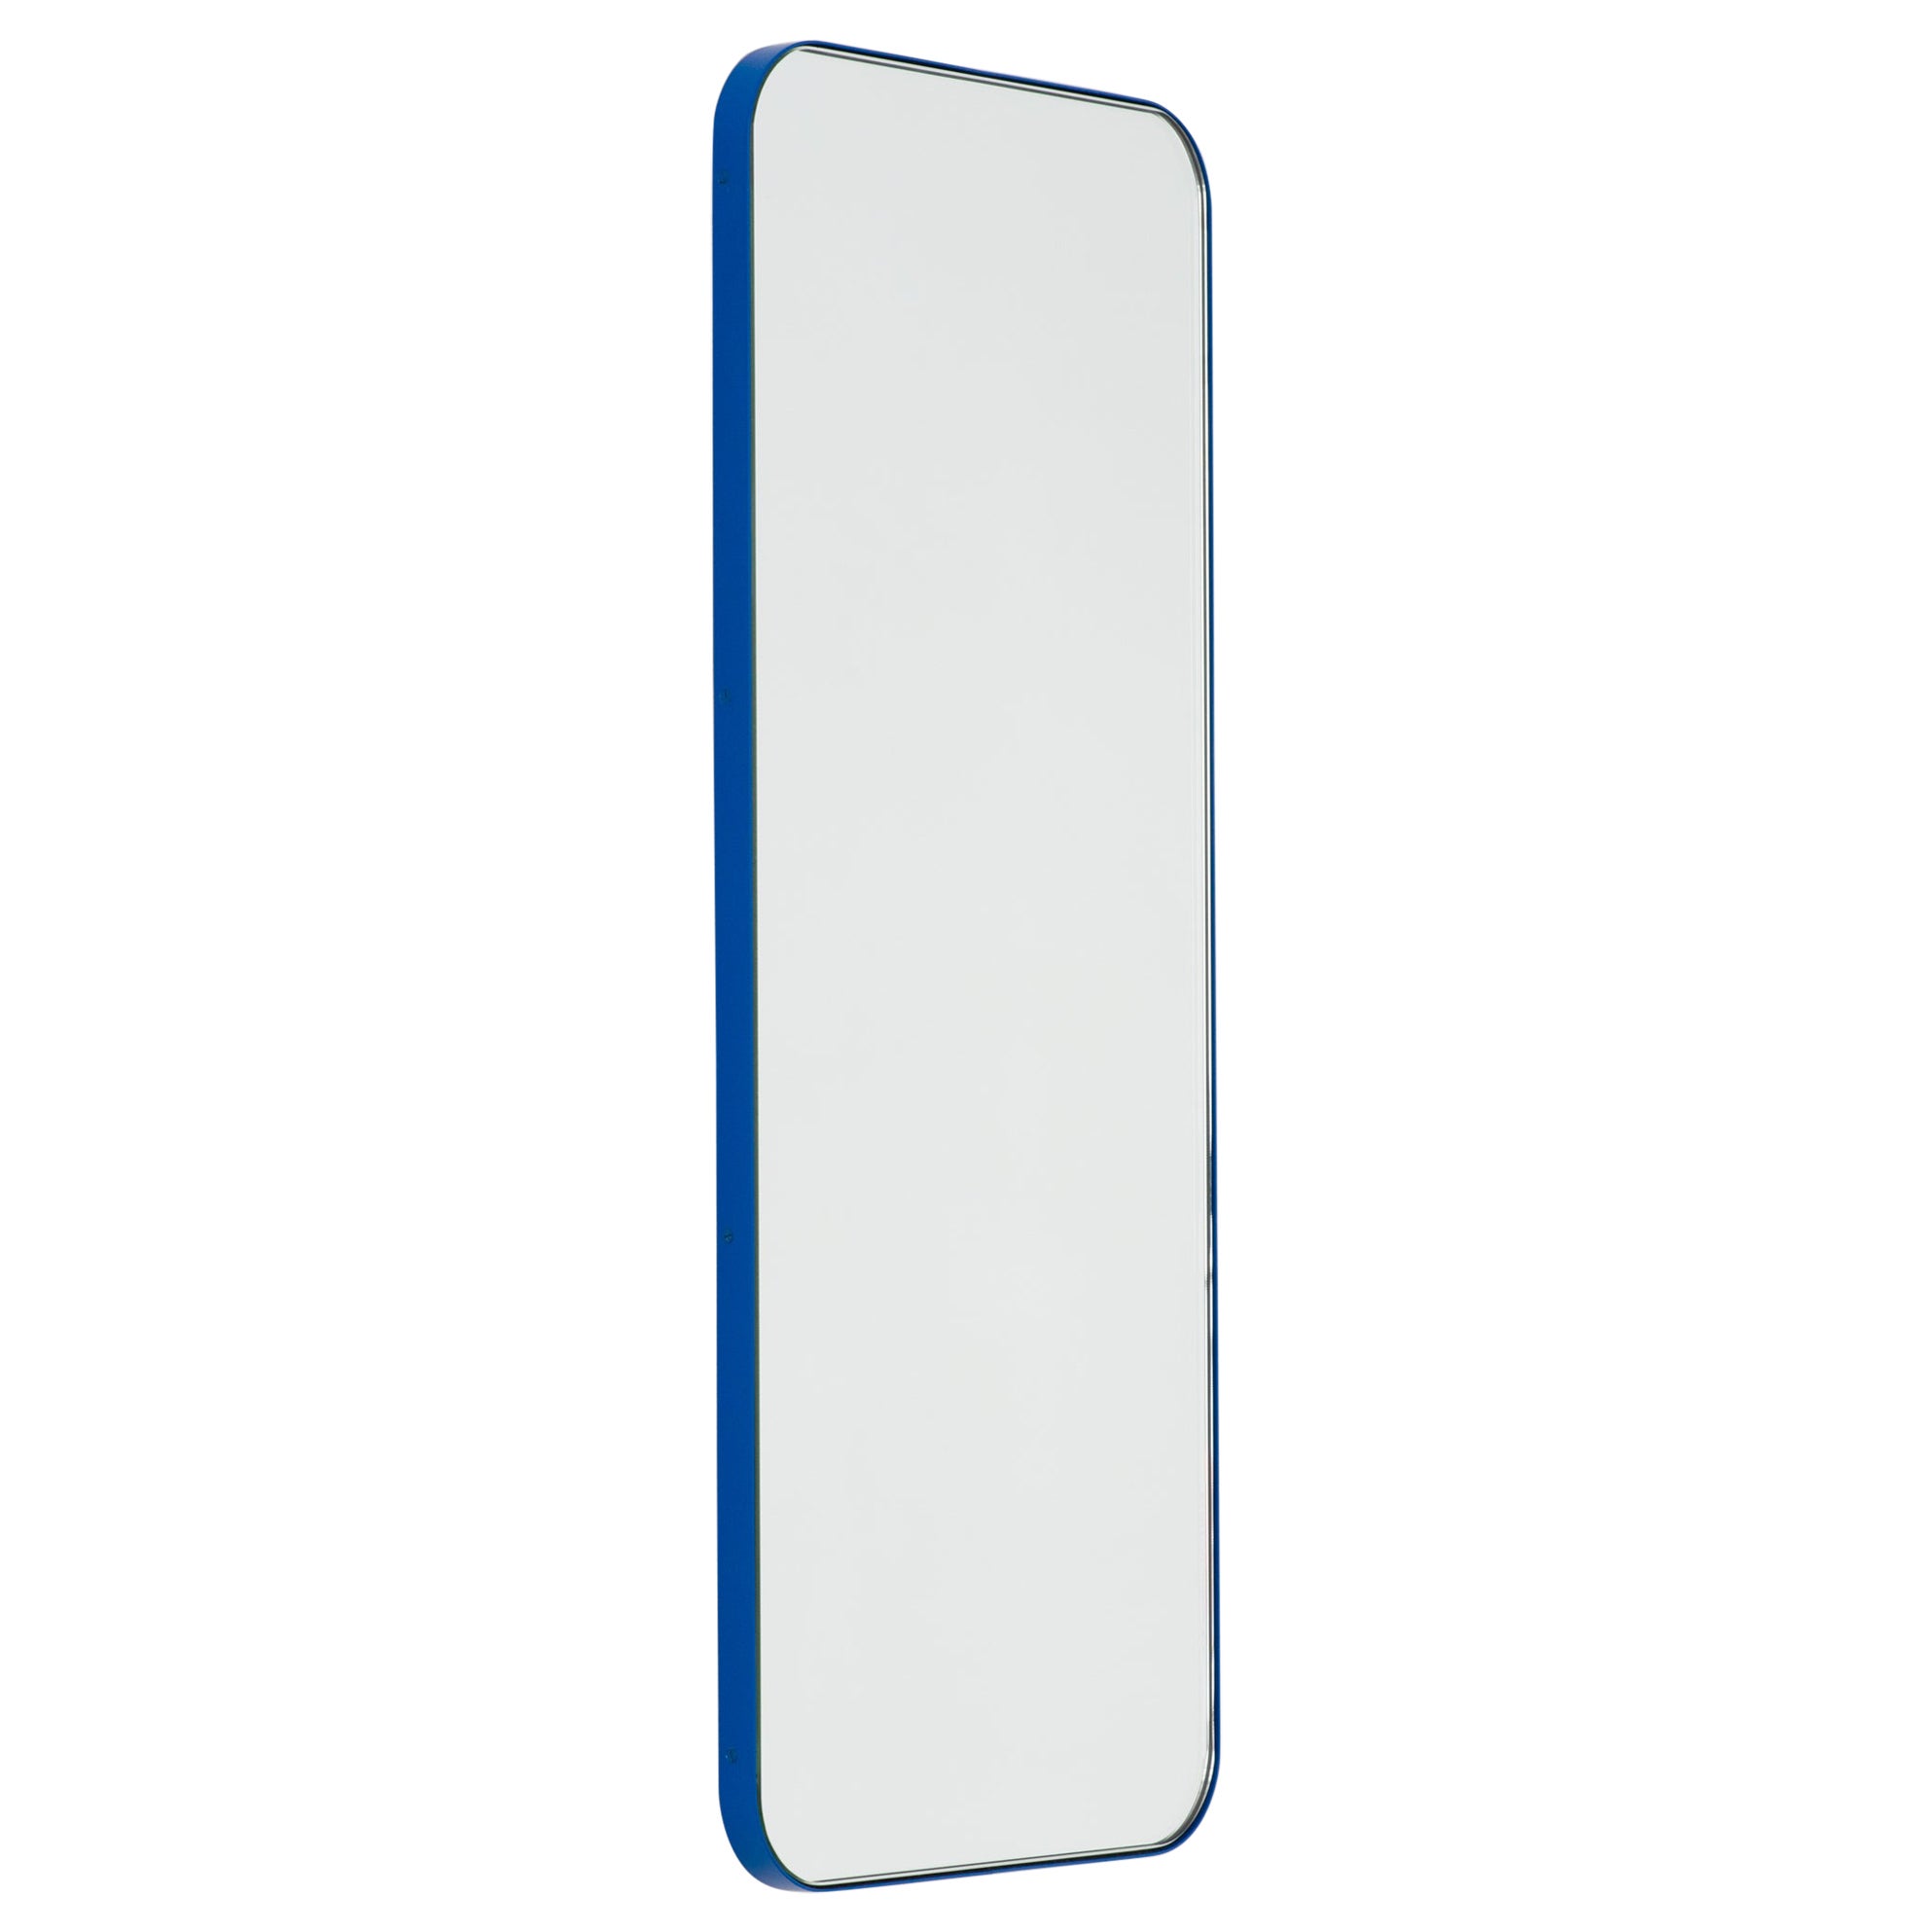 Grand miroir rectangulaire minimaliste avec cadre bleu de la collection Quadris